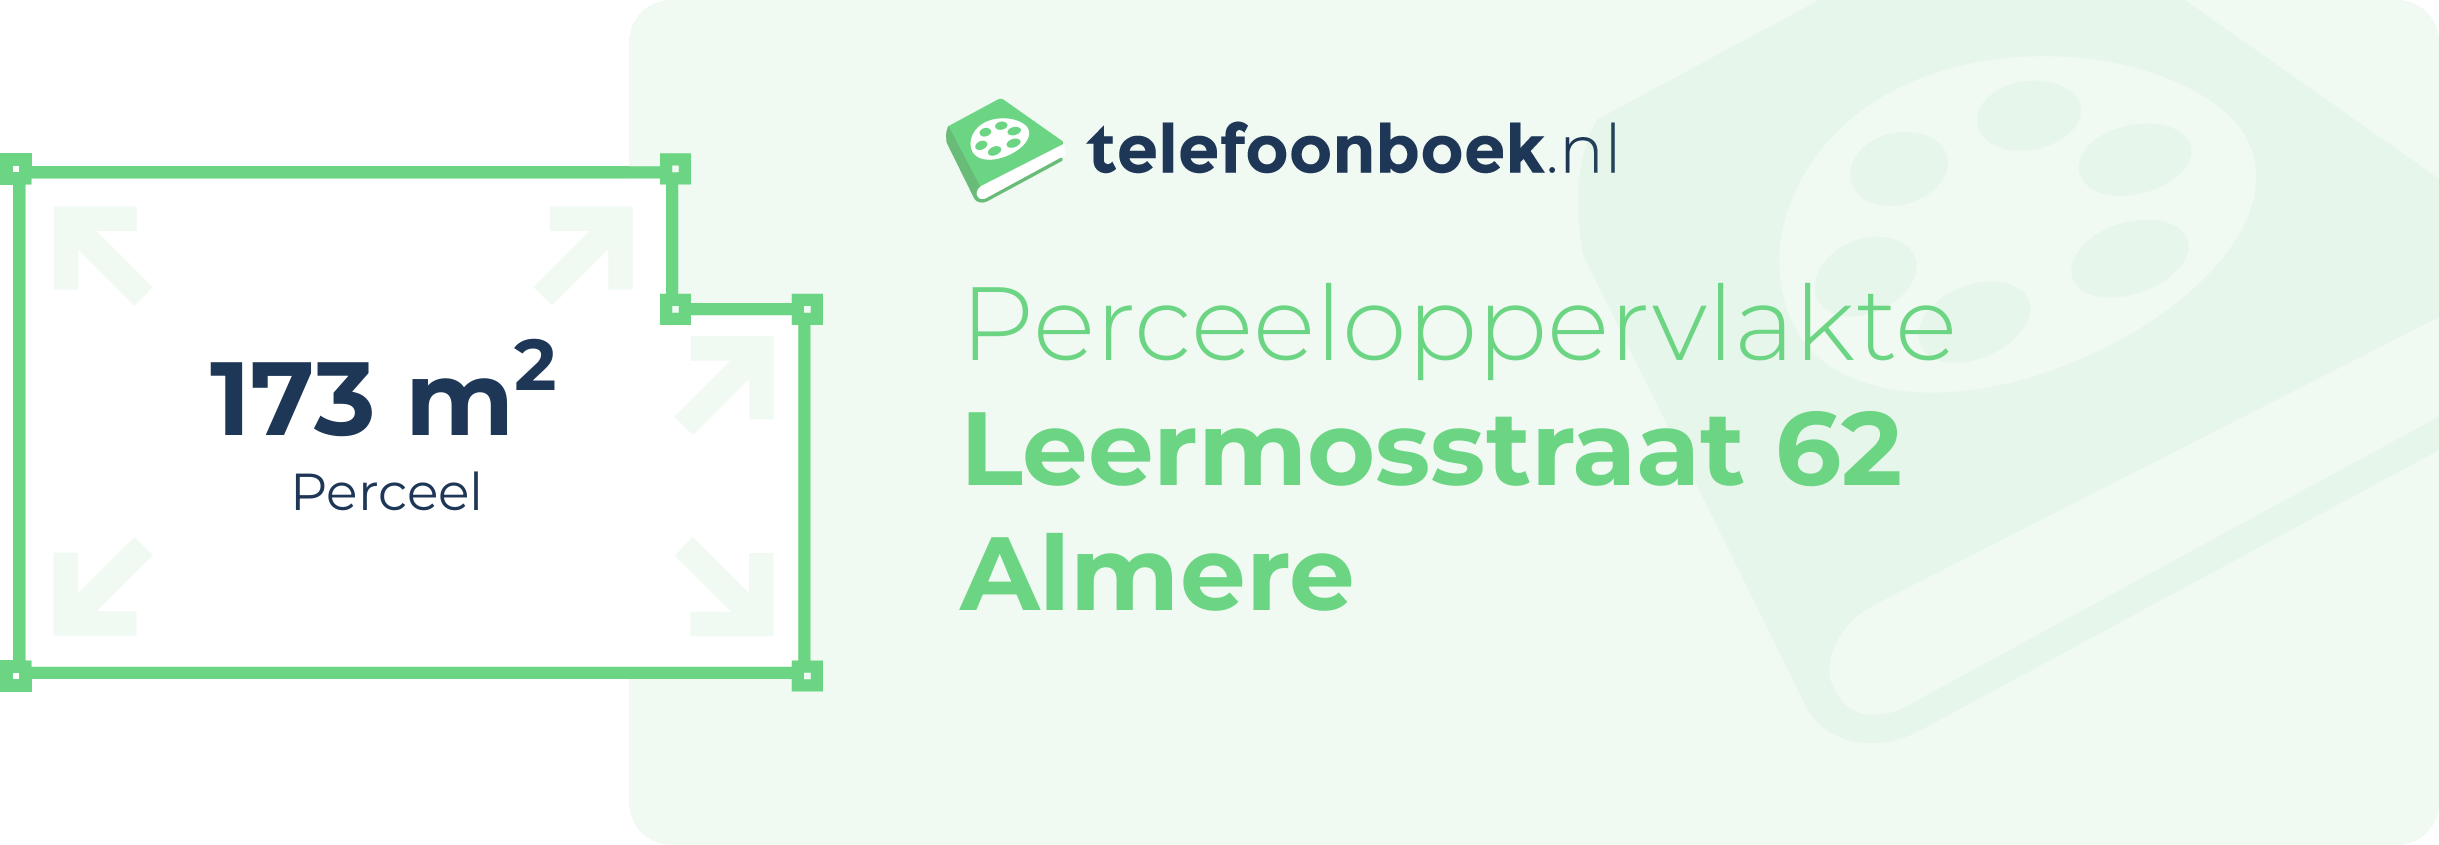 Perceeloppervlakte Leermosstraat 62 Almere